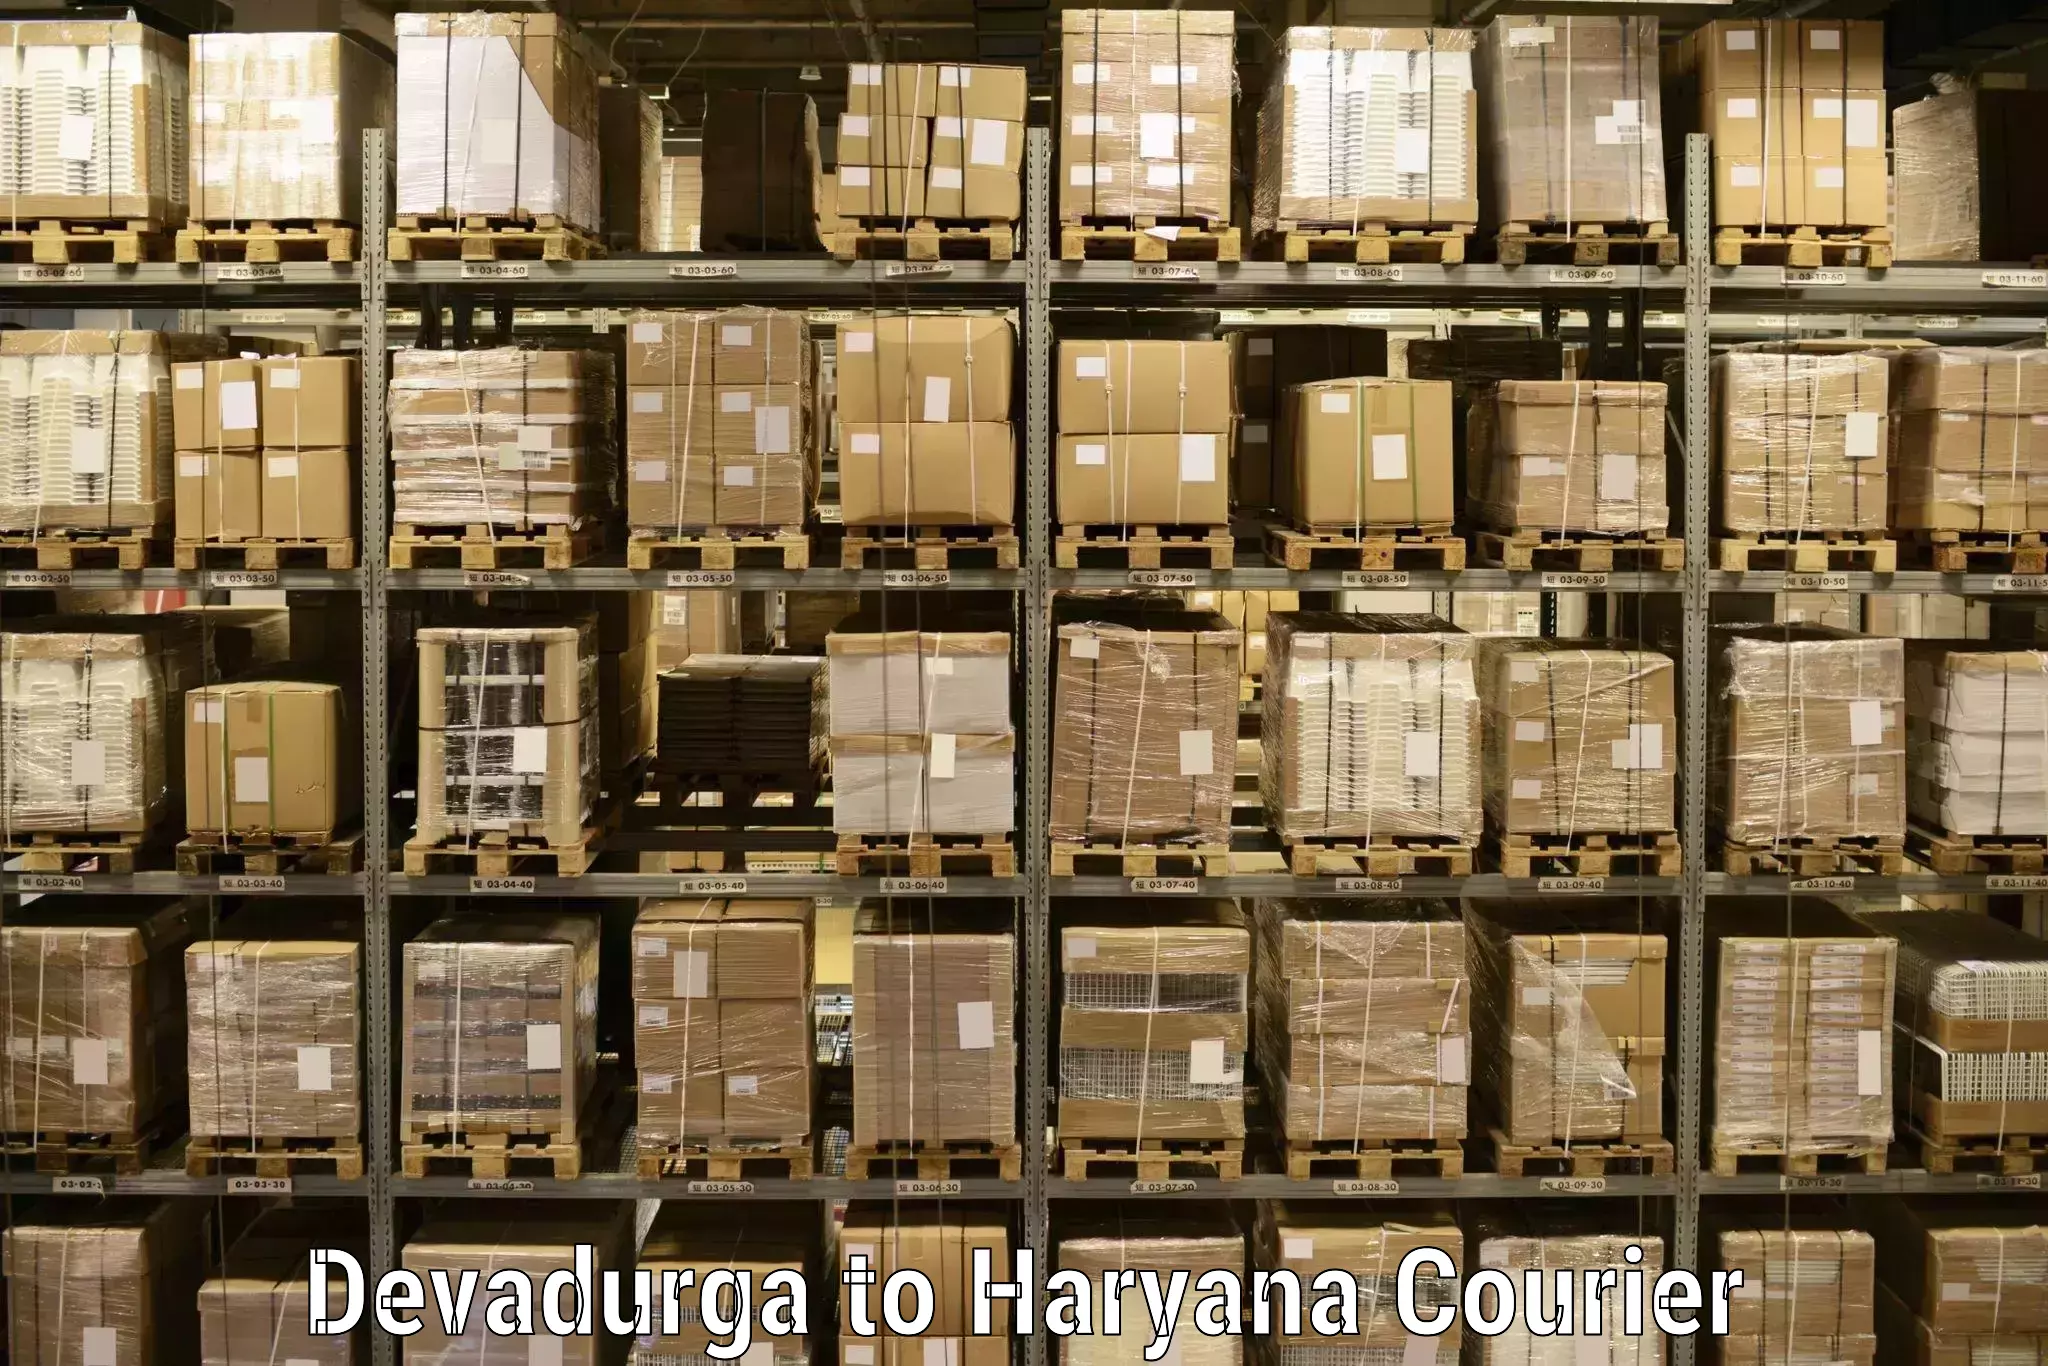 High-speed parcel service Devadurga to Hansi